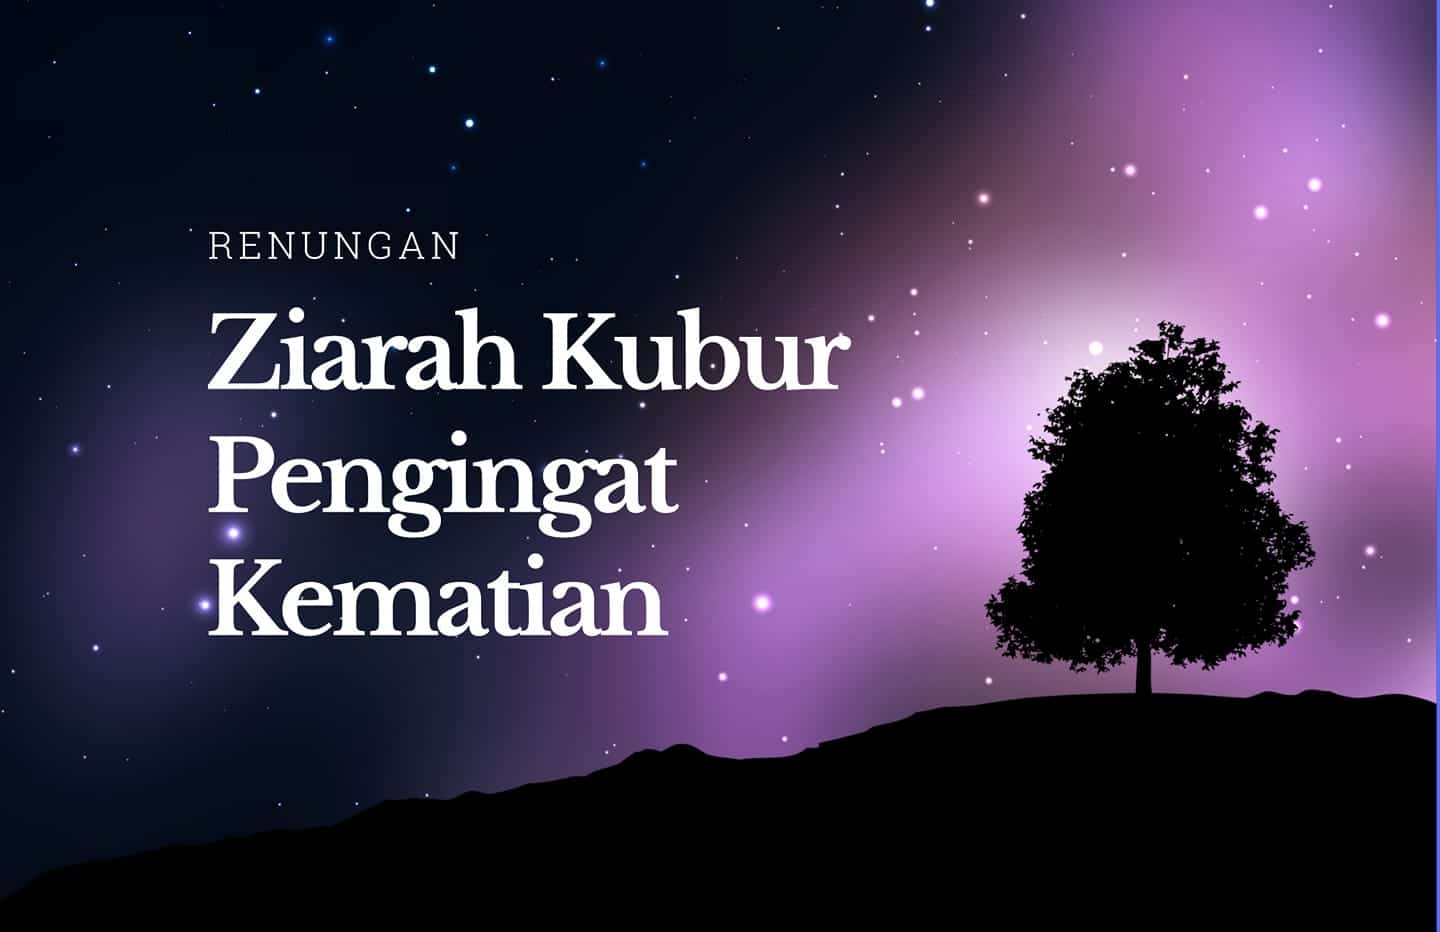 Menziarahi kubur hikmah Ziarah Kubur: